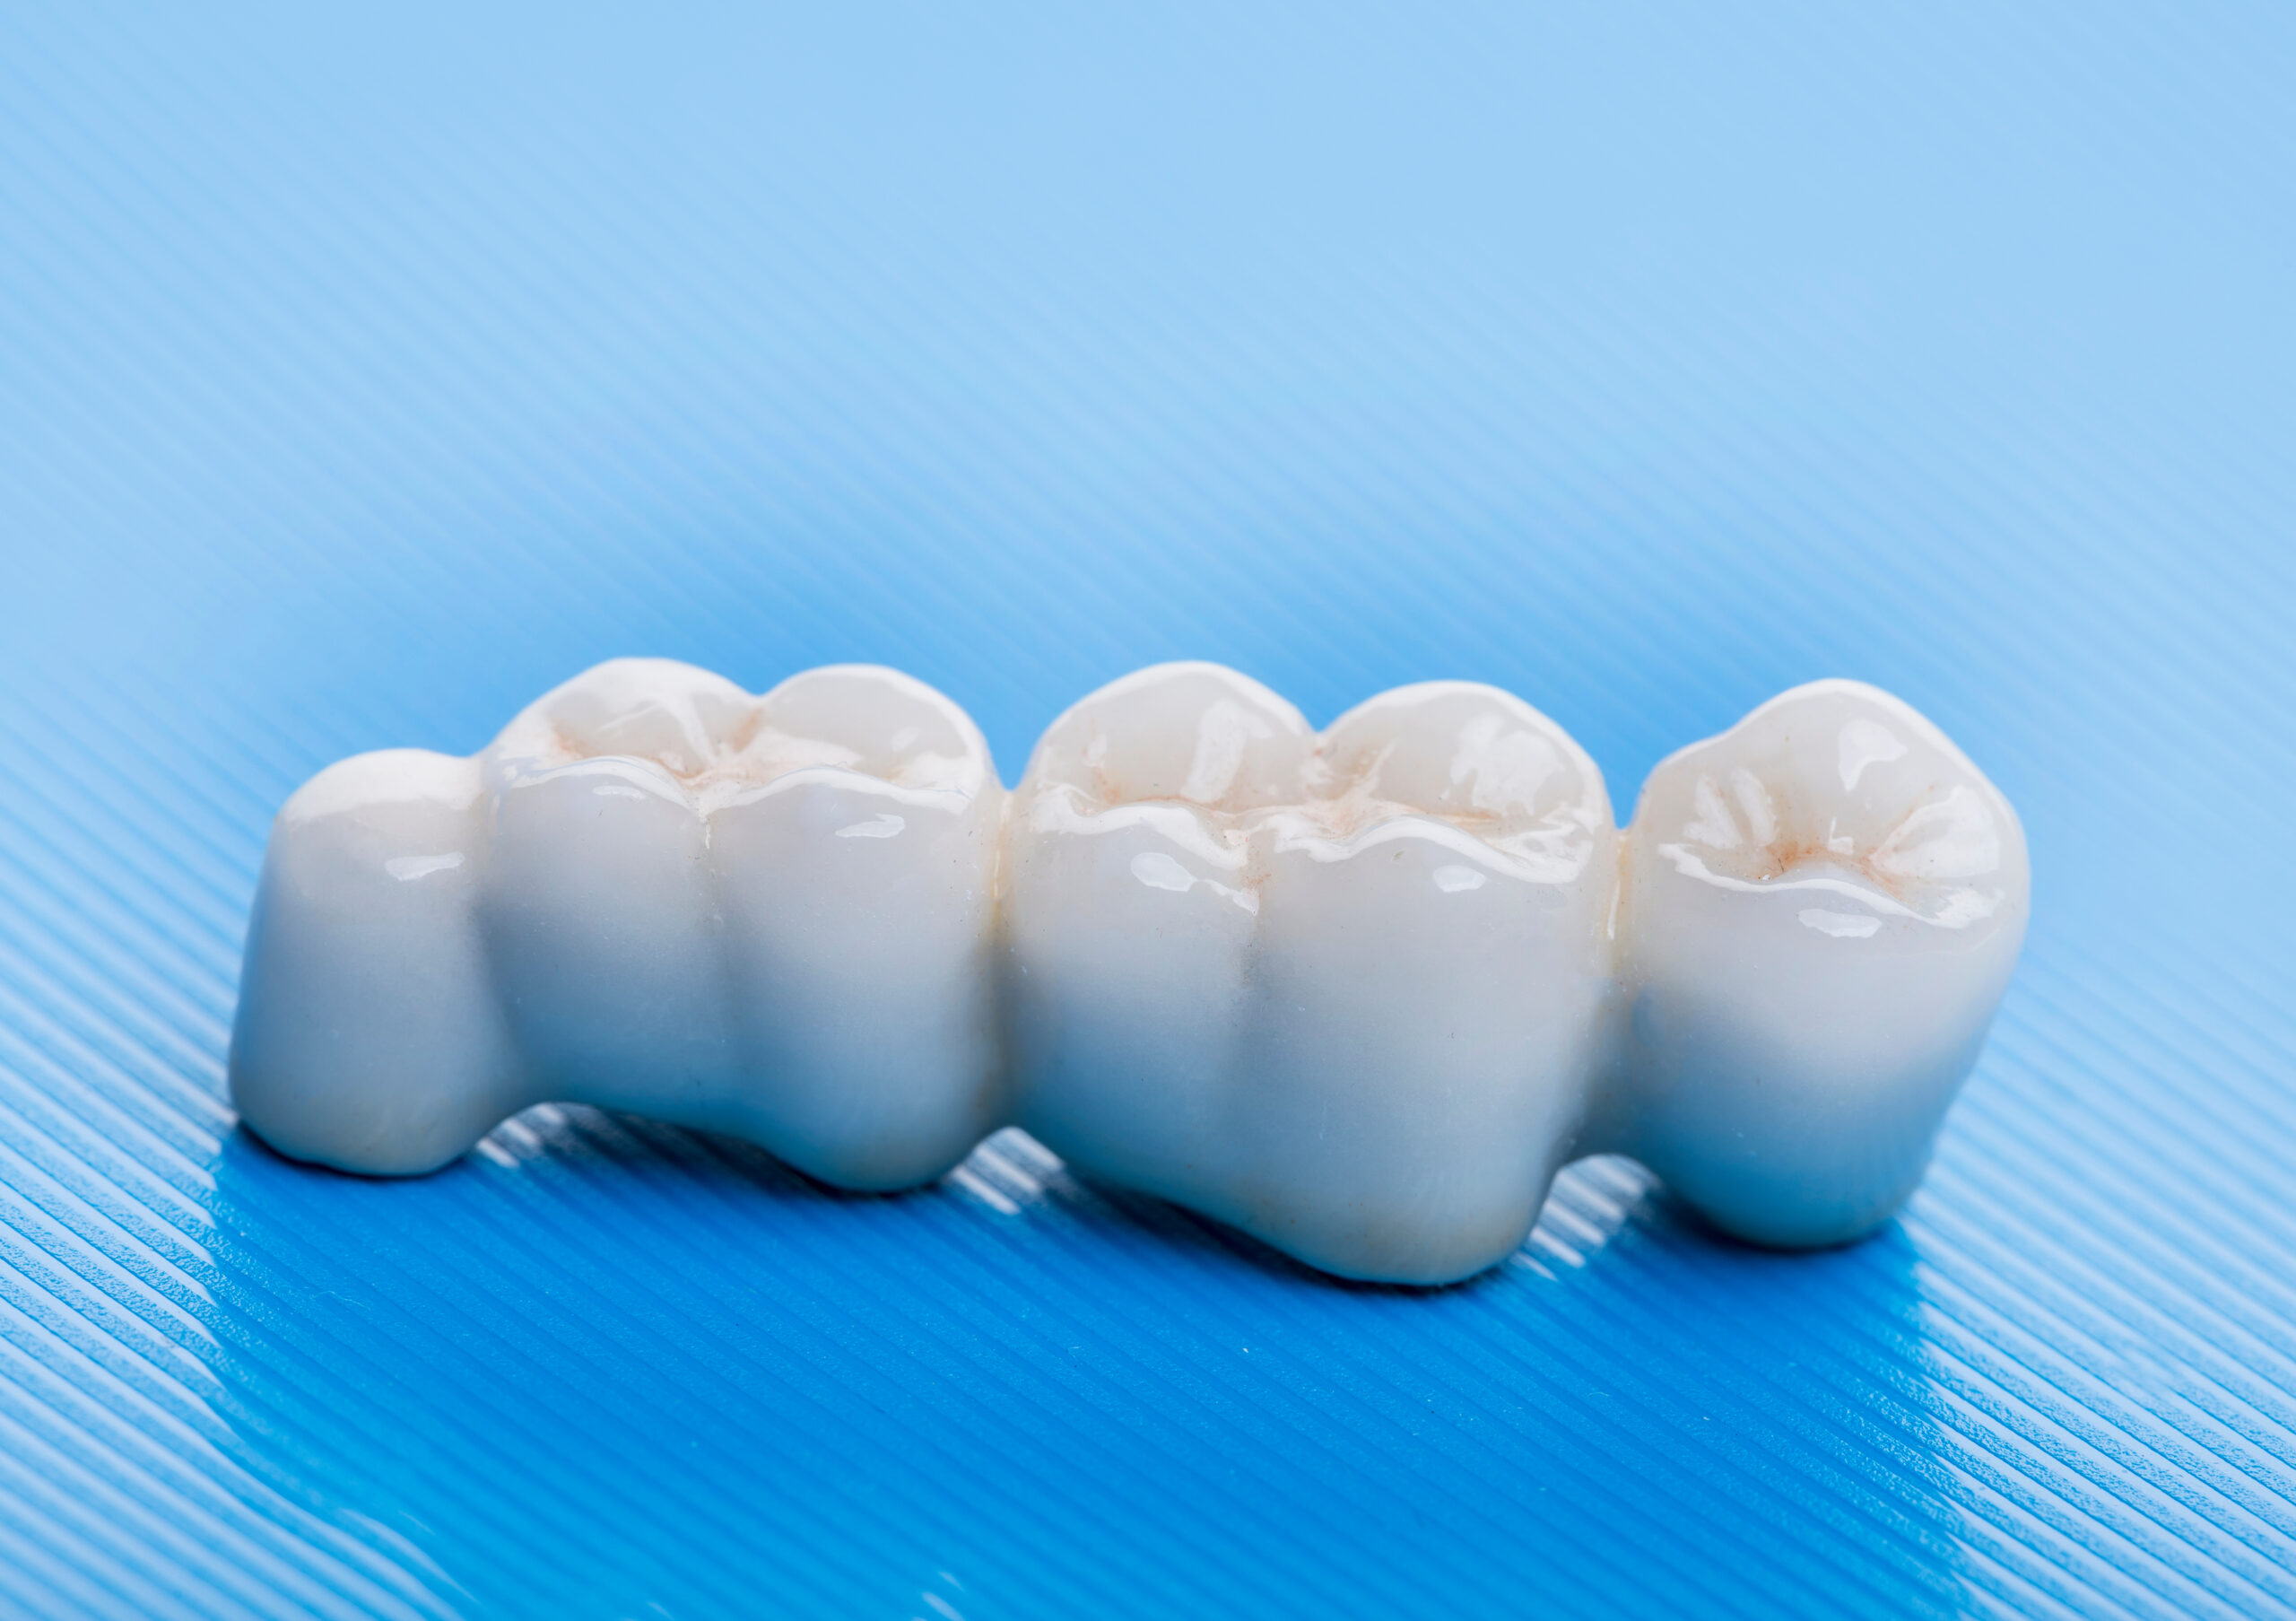 Dental Bridges and Partials